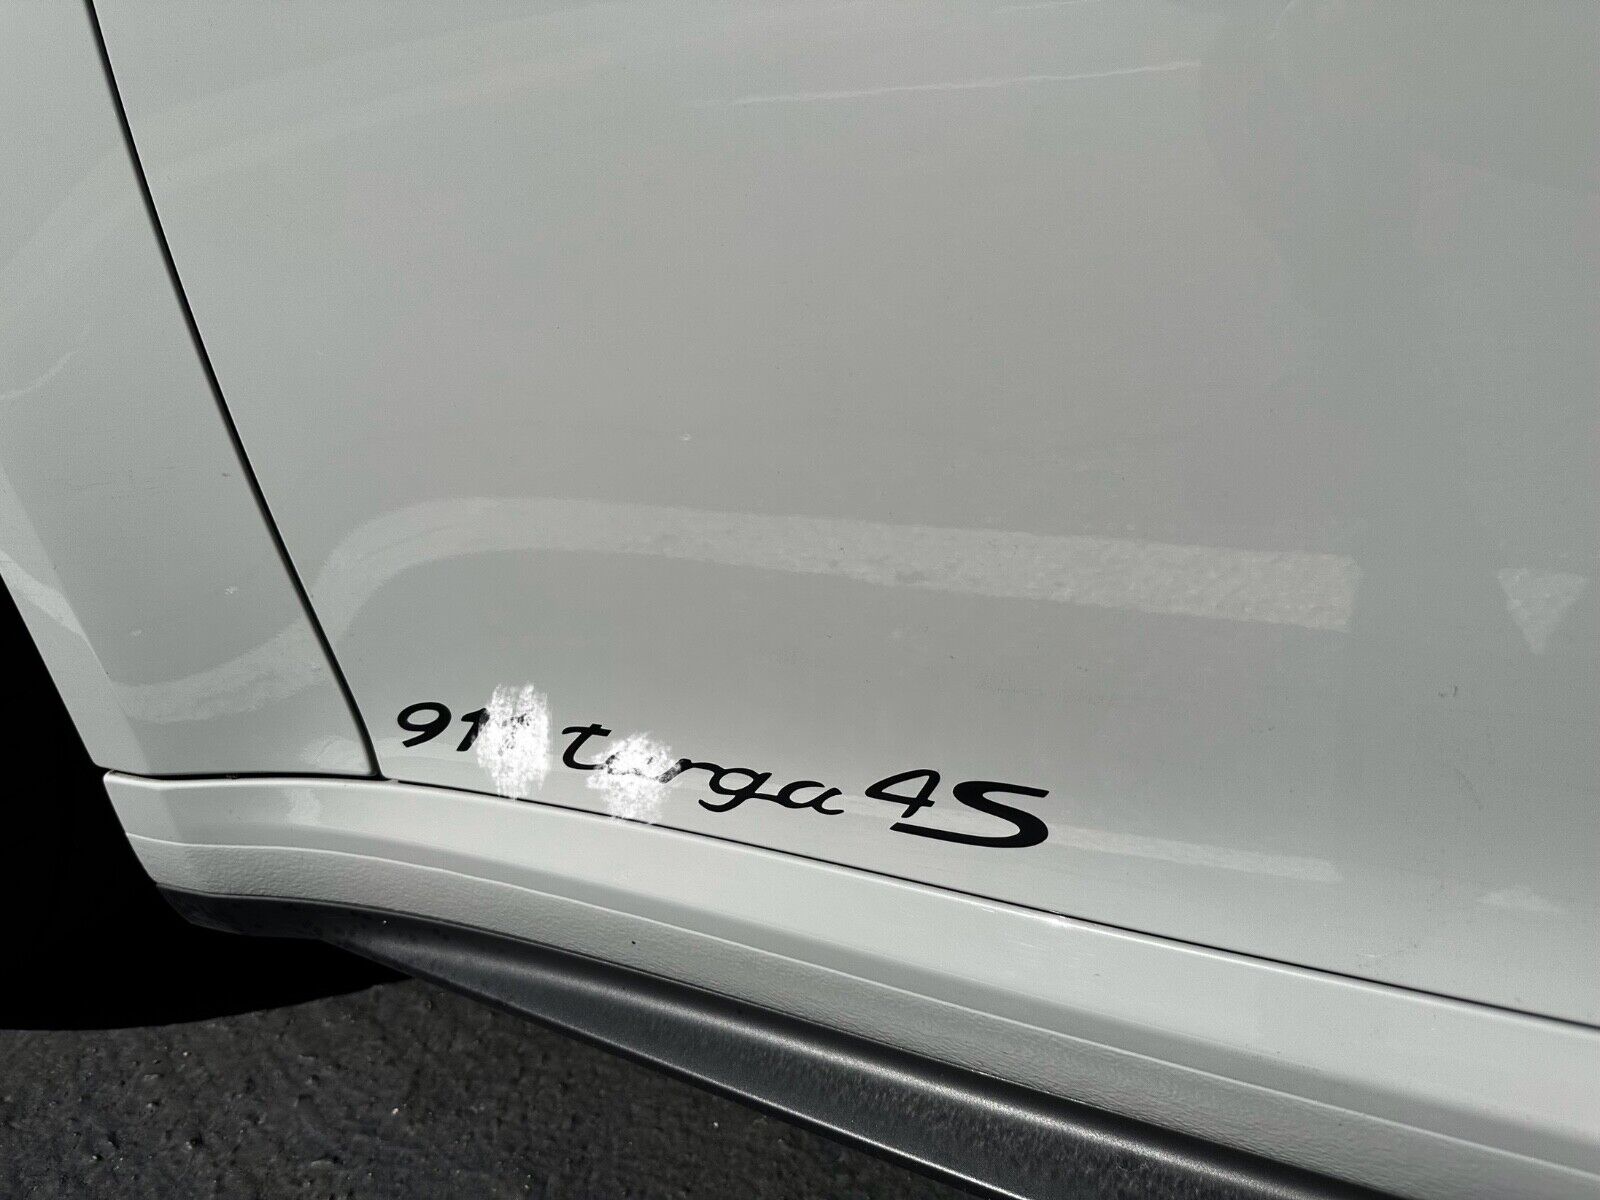 Custom 911 Targa 4S Side Door Decals for Porsche 911 1996-2019 991 997 996 964